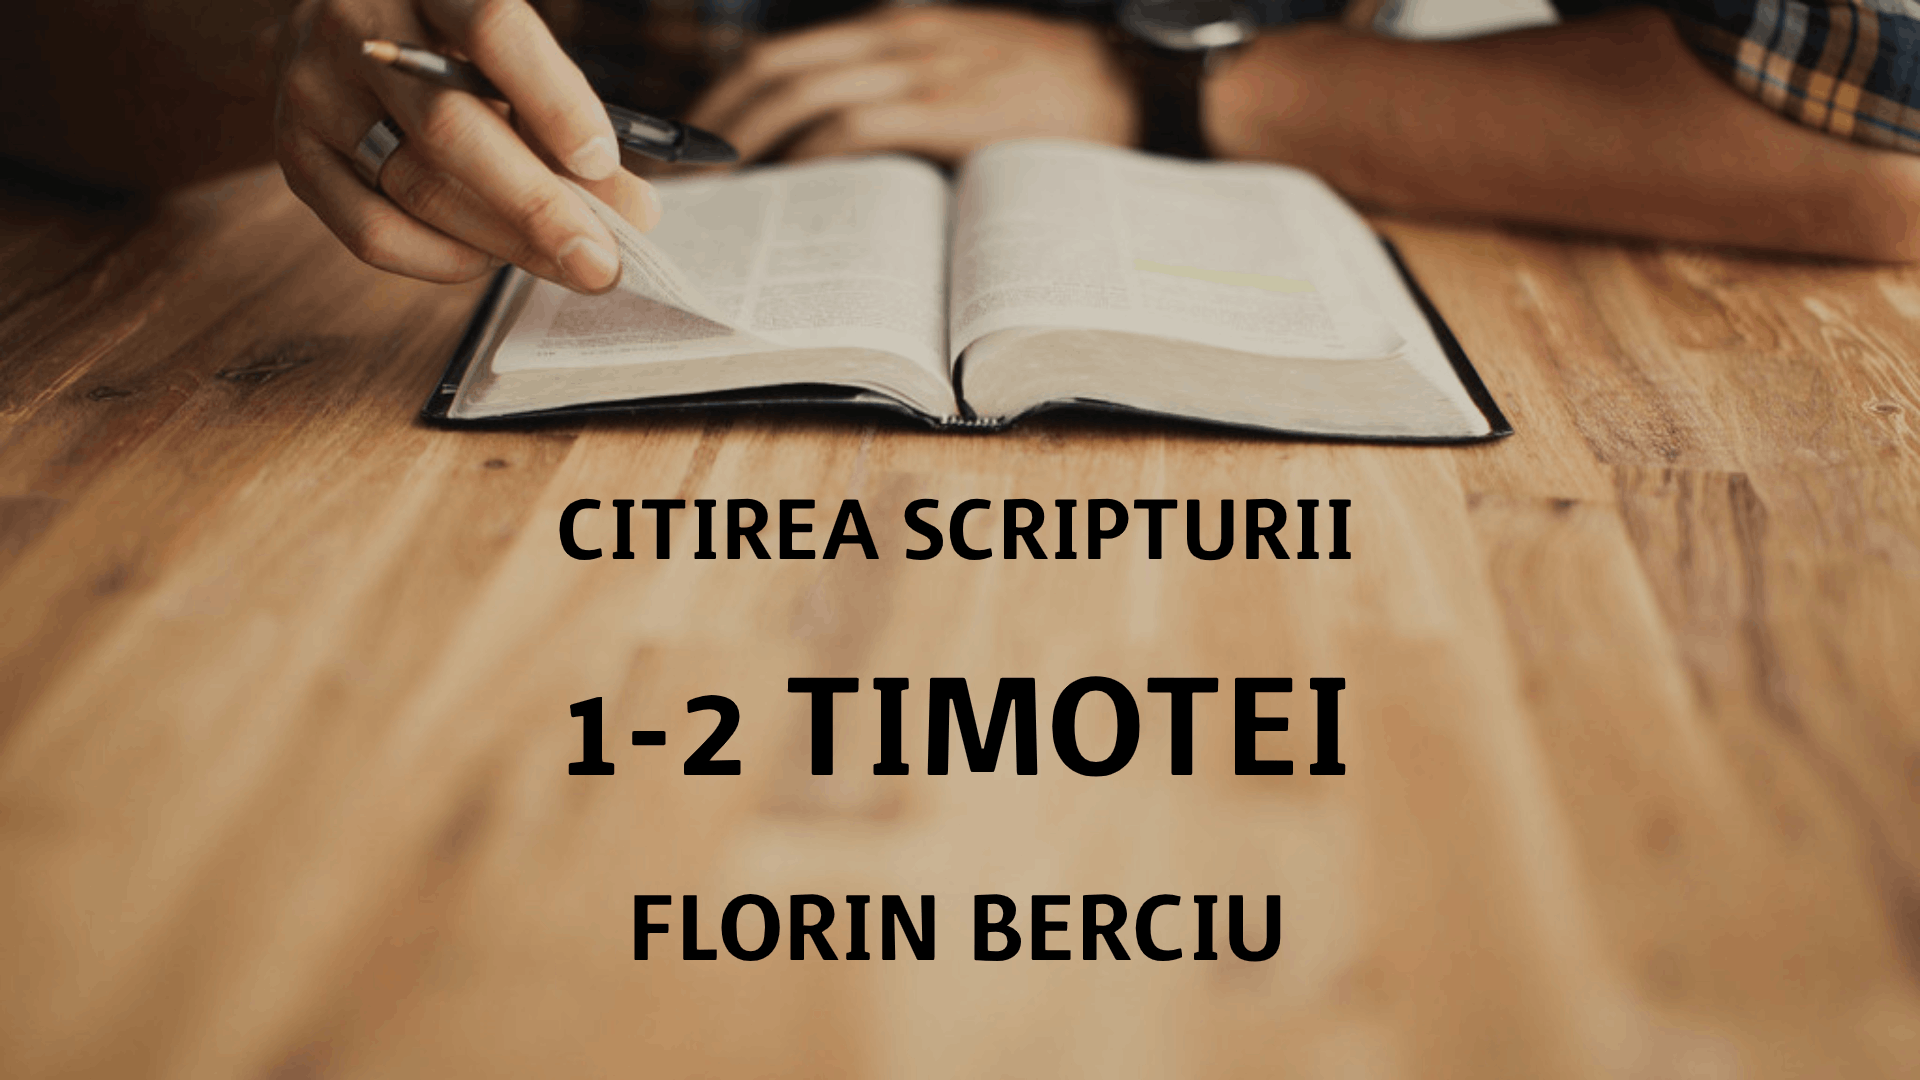 Citirea Scripturii - 1-2 Timotei - Florin Berciu